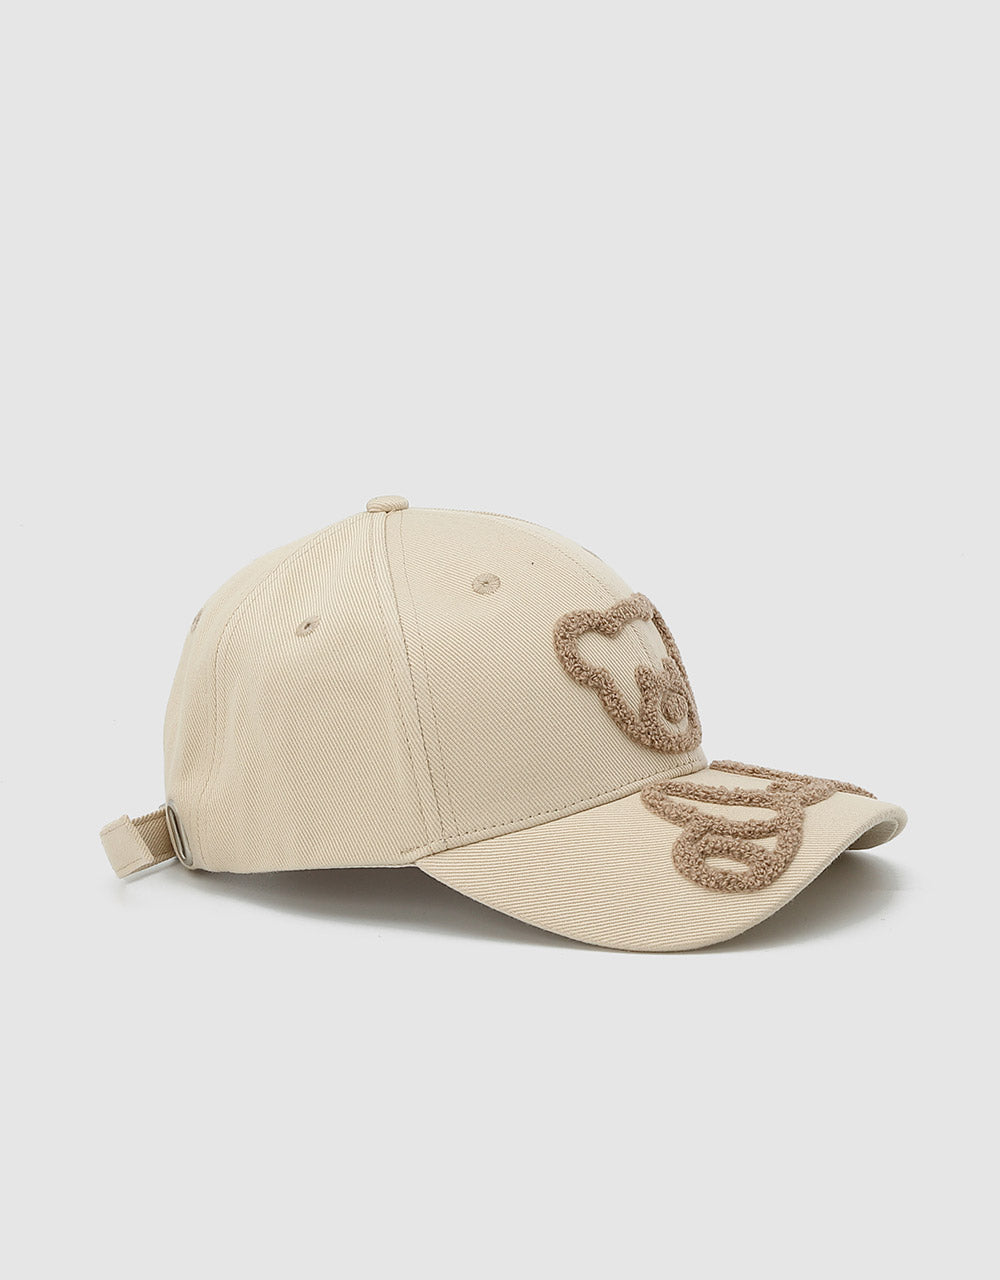 곰 자수 야구 모자